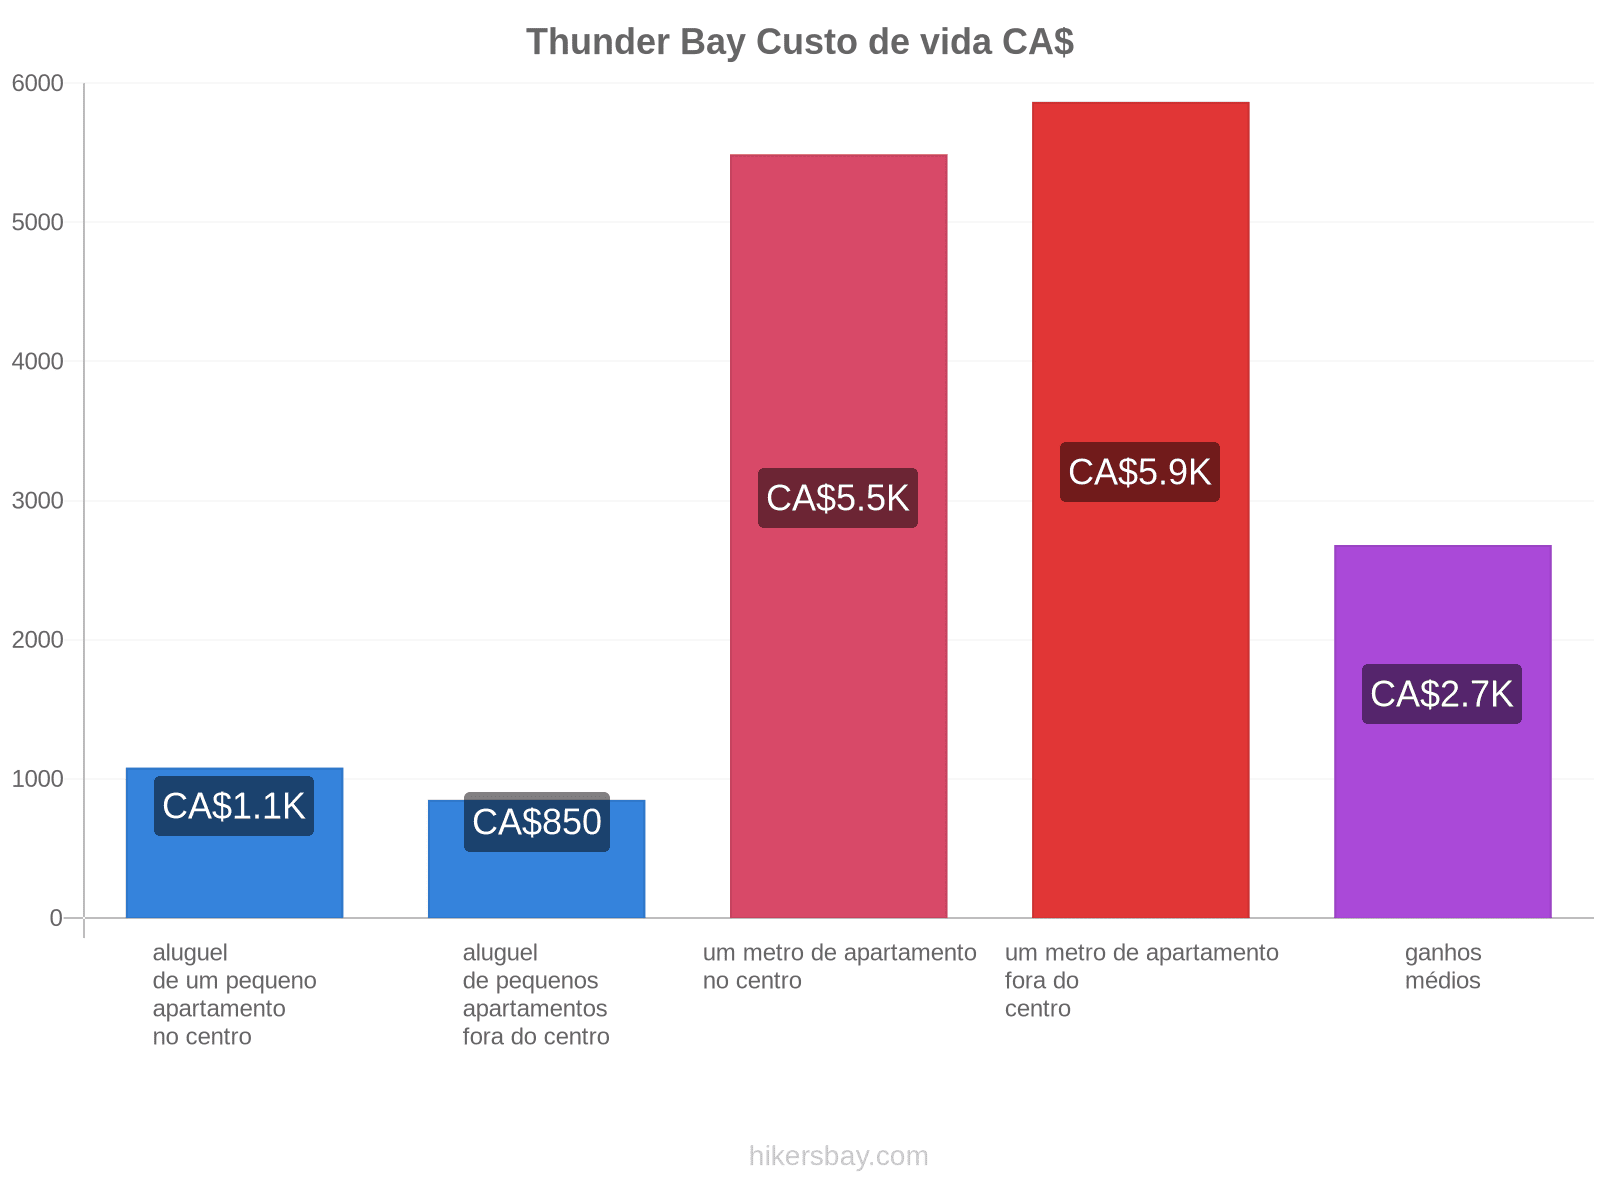 Thunder Bay custo de vida hikersbay.com